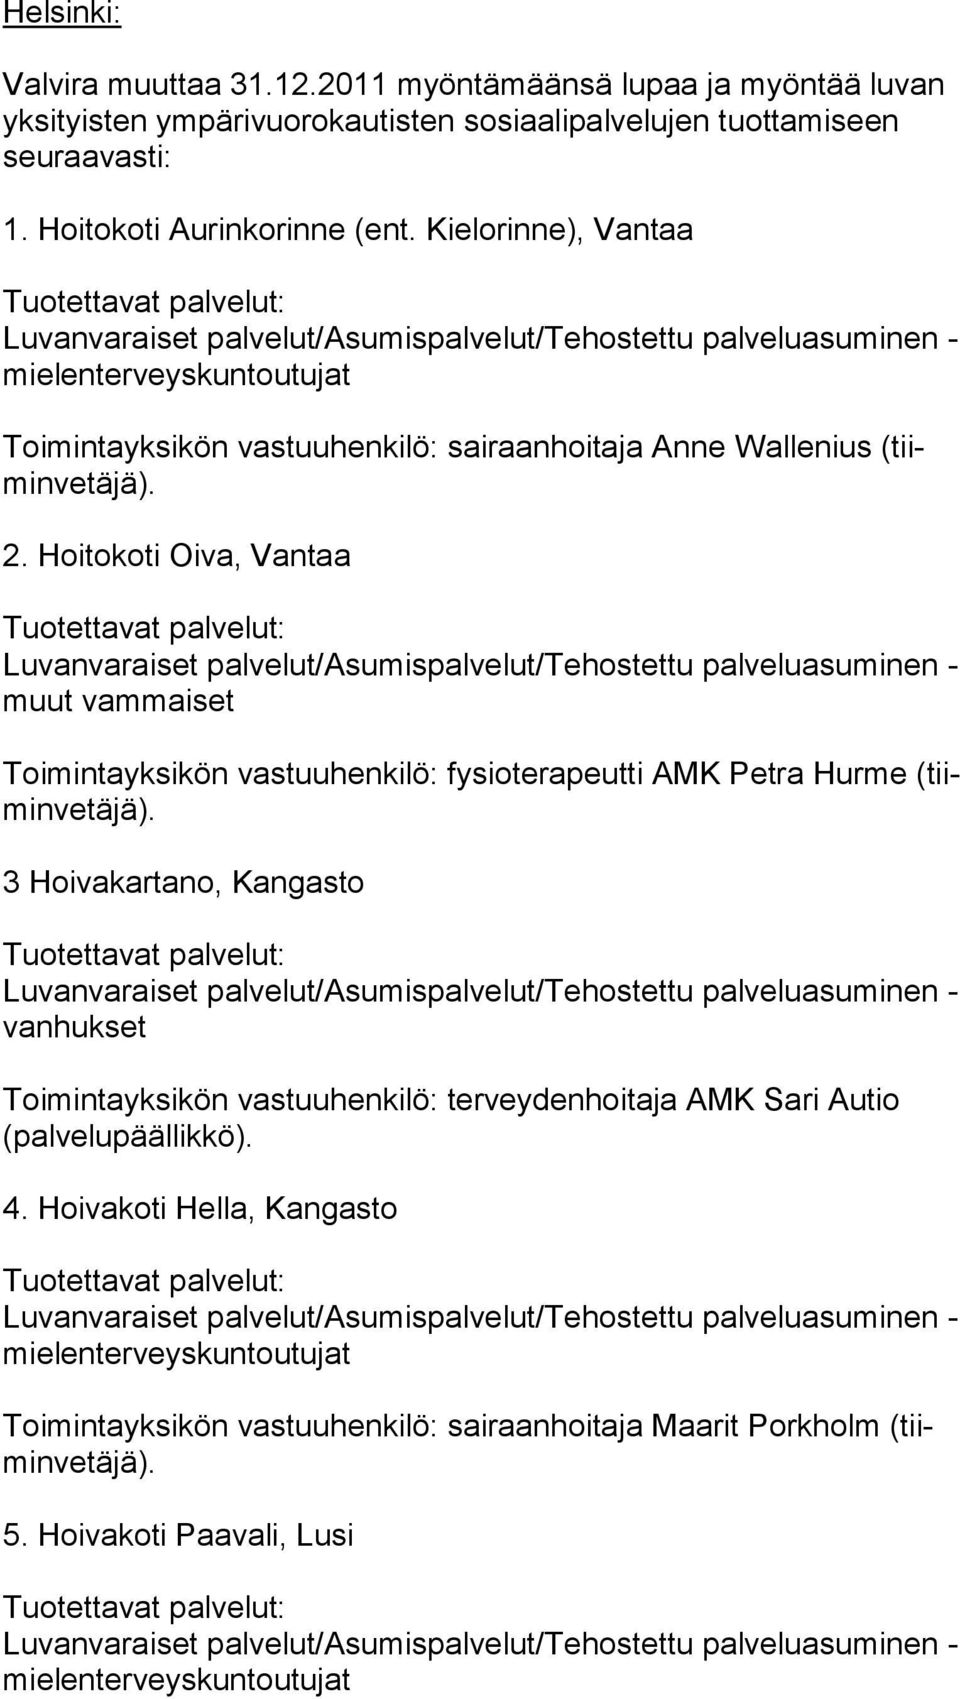 Hoitokoti Oiva, Vantaa muut vammaiset Toimintayksikön vastuuhenkilö: fysioterapeutti AMK Petra Hurme (tiimin ve tä jä).